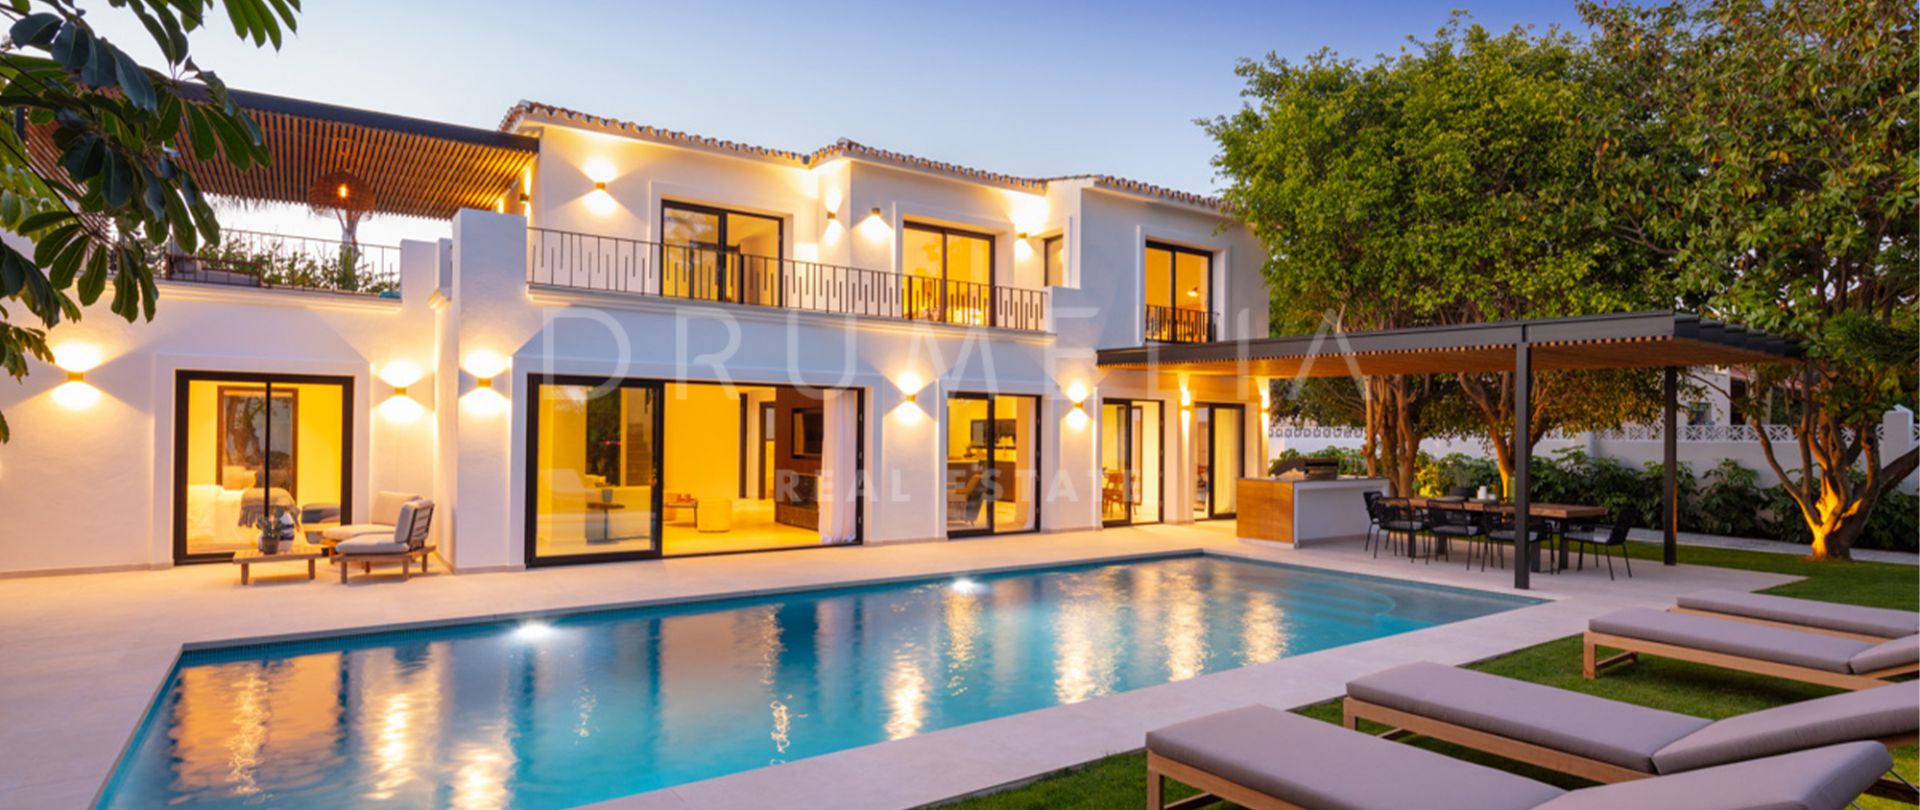 Pas gerestaureerde luxe villa op een steenworp afstand van het strand in Cortijo Blanco